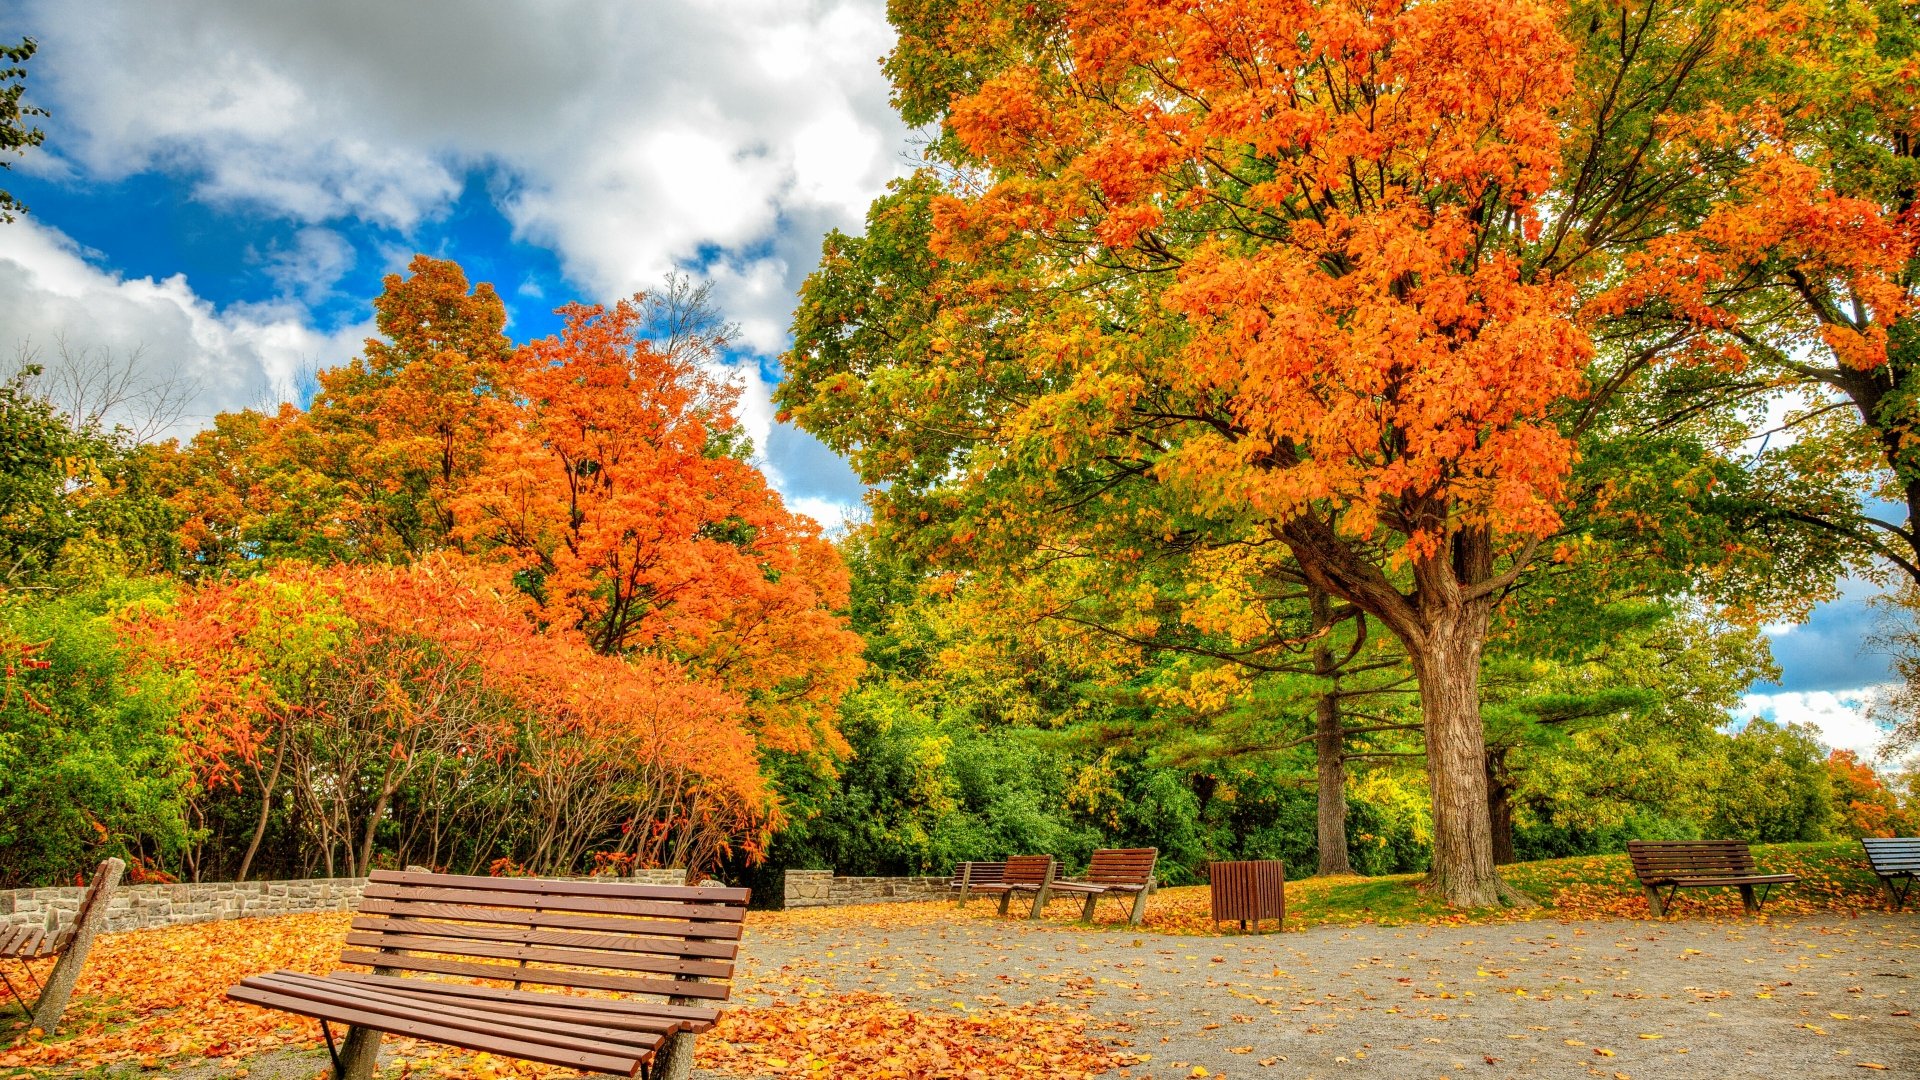 Ghế đá trong công viên mùa thu mang đến cho bạn cảm giác thư giãn, yên bình khi ngồi trên đó và chiêm ngưỡng những cảnh đẹp của mùa thu. Bạn sẽ hài lòng với một chiếc ghế đá đầy ấn tượng này.